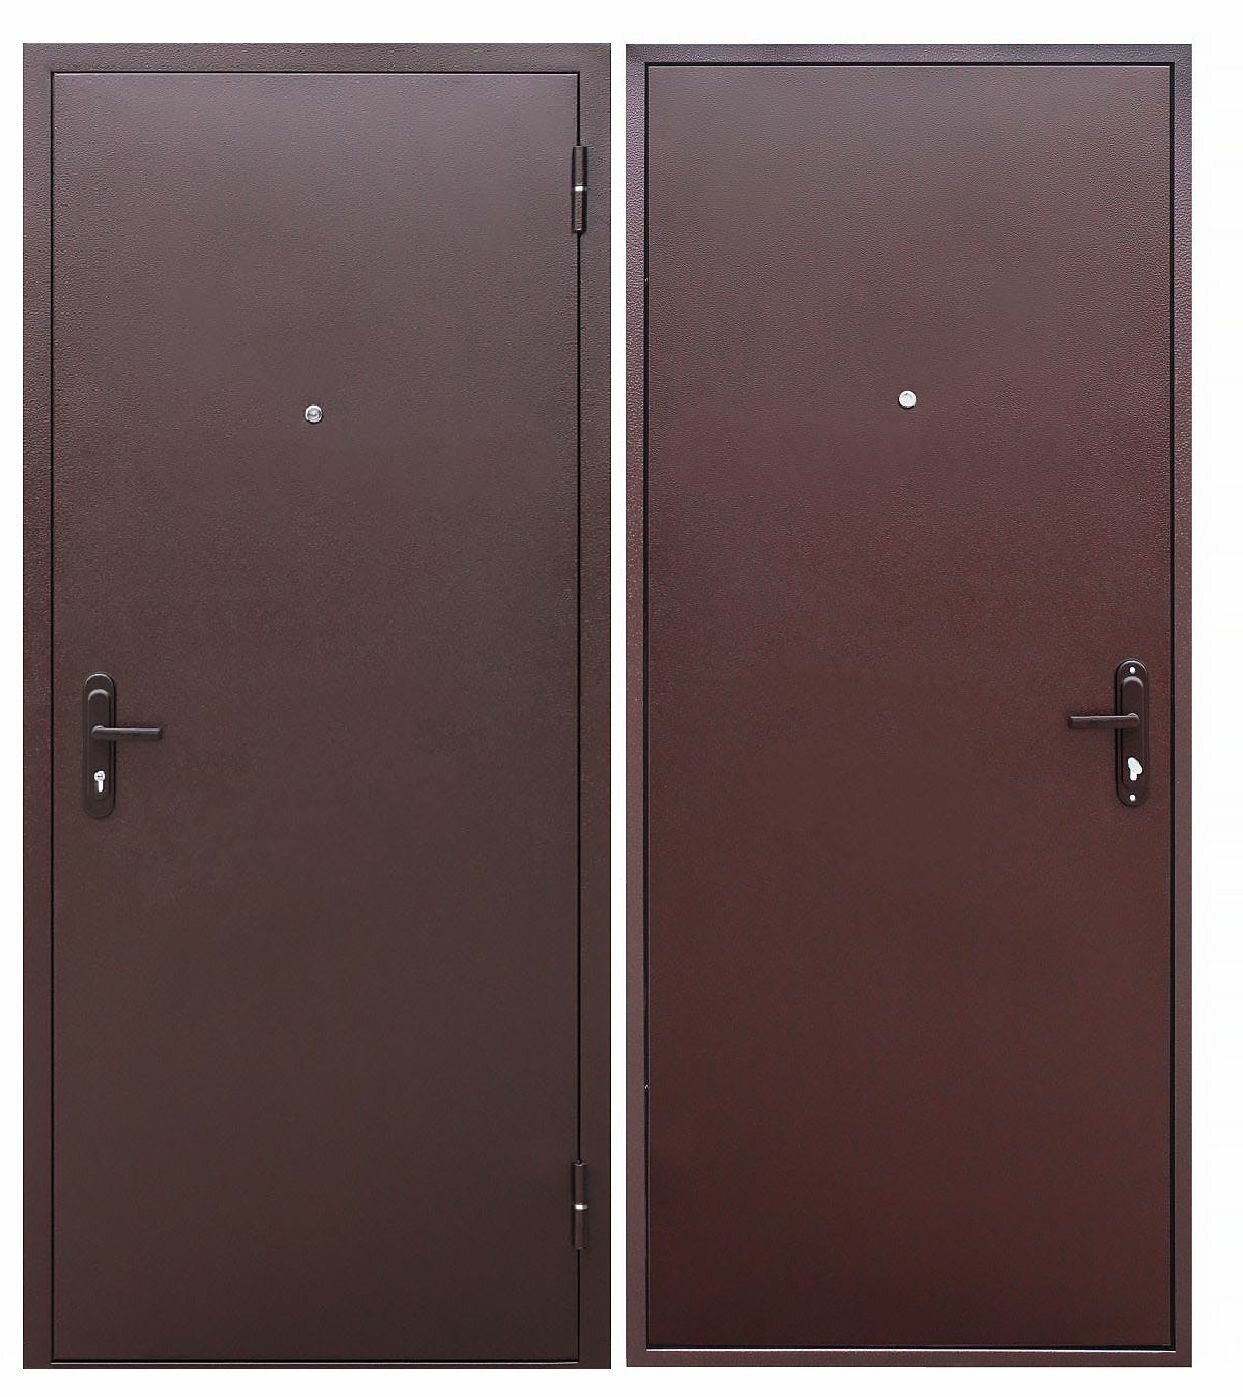 Дверь входная Стройгост 5 РФ (прораб) металл/металл 860*2050 левая